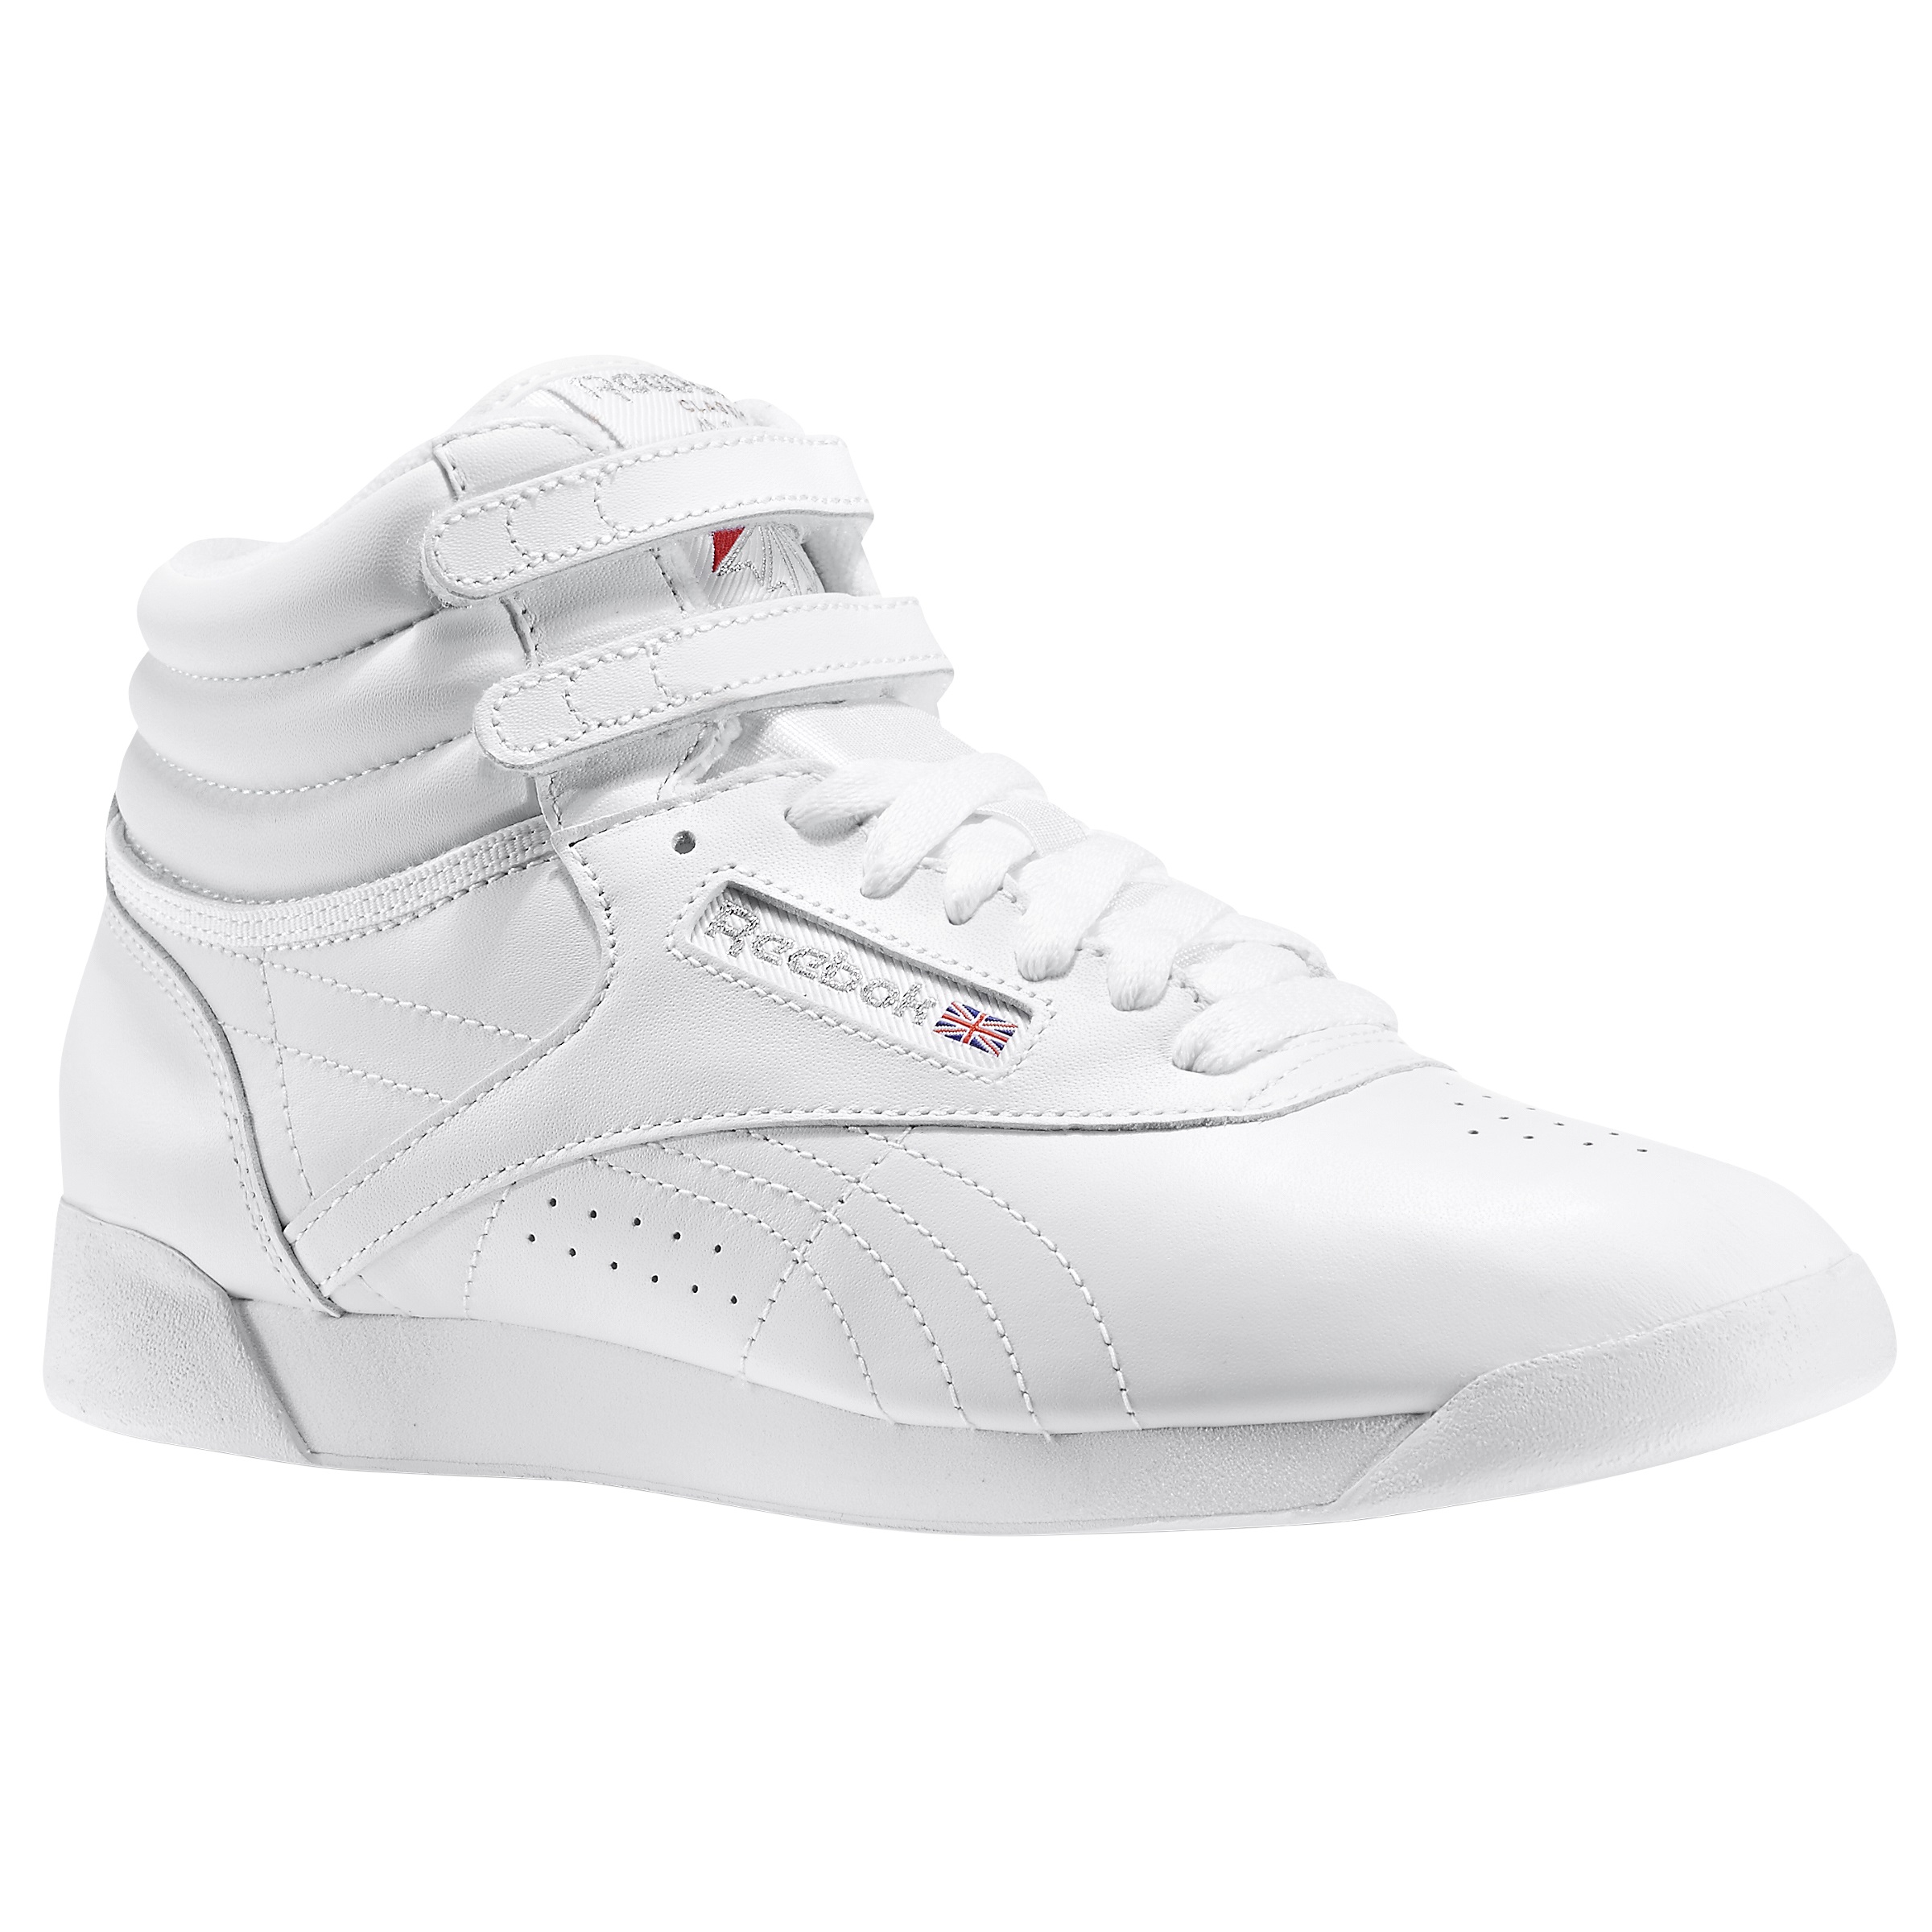 Reebok freestyle sneaker in white